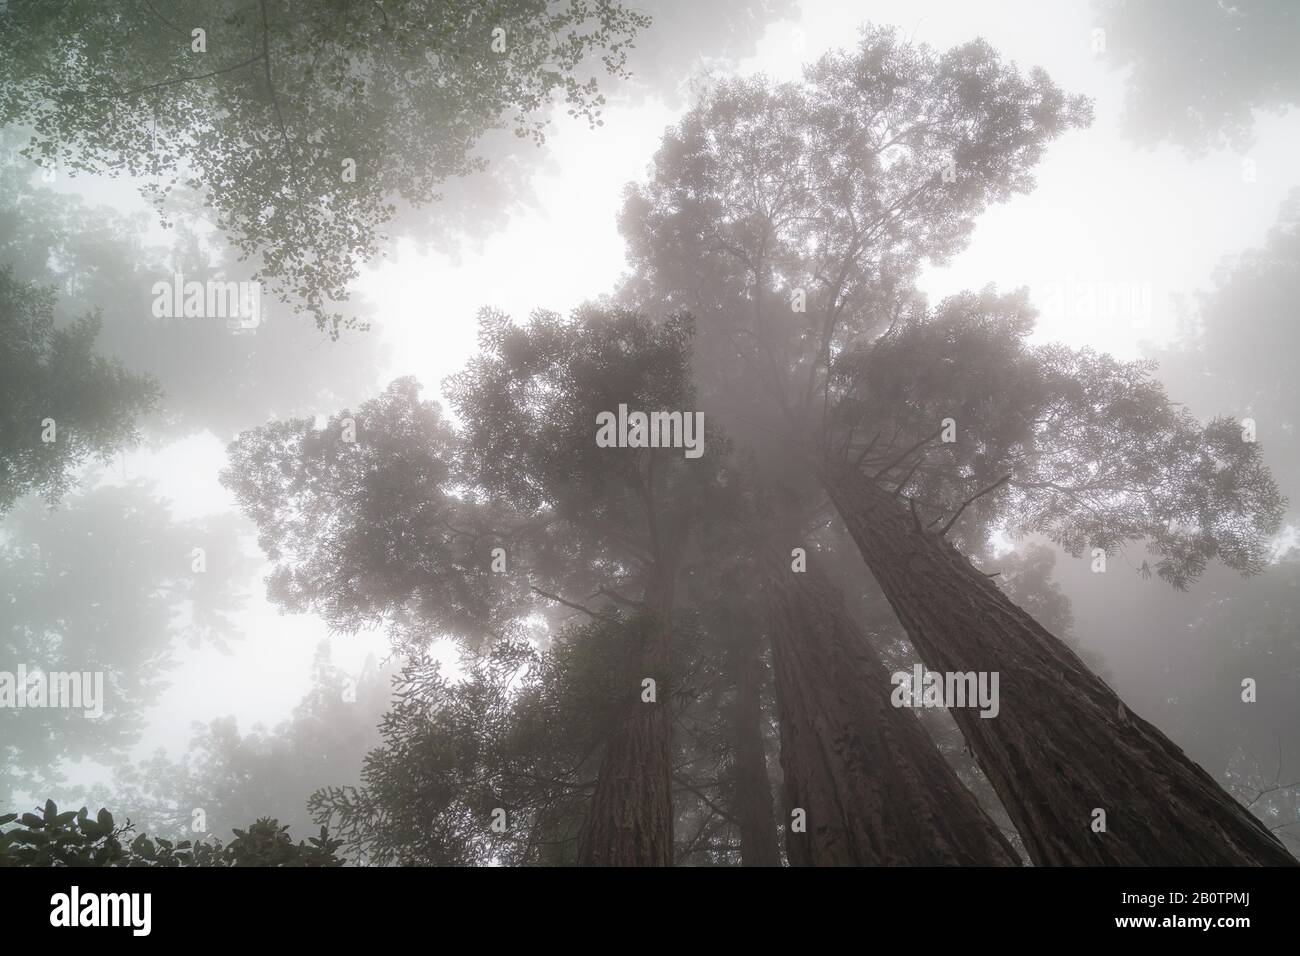 Les séquoias géants sont situés dans le nord de la Californie et évoquent des sentiments mystiques de fascination. Beaucoup d'arbres ont 300 ans. Banque D'Images